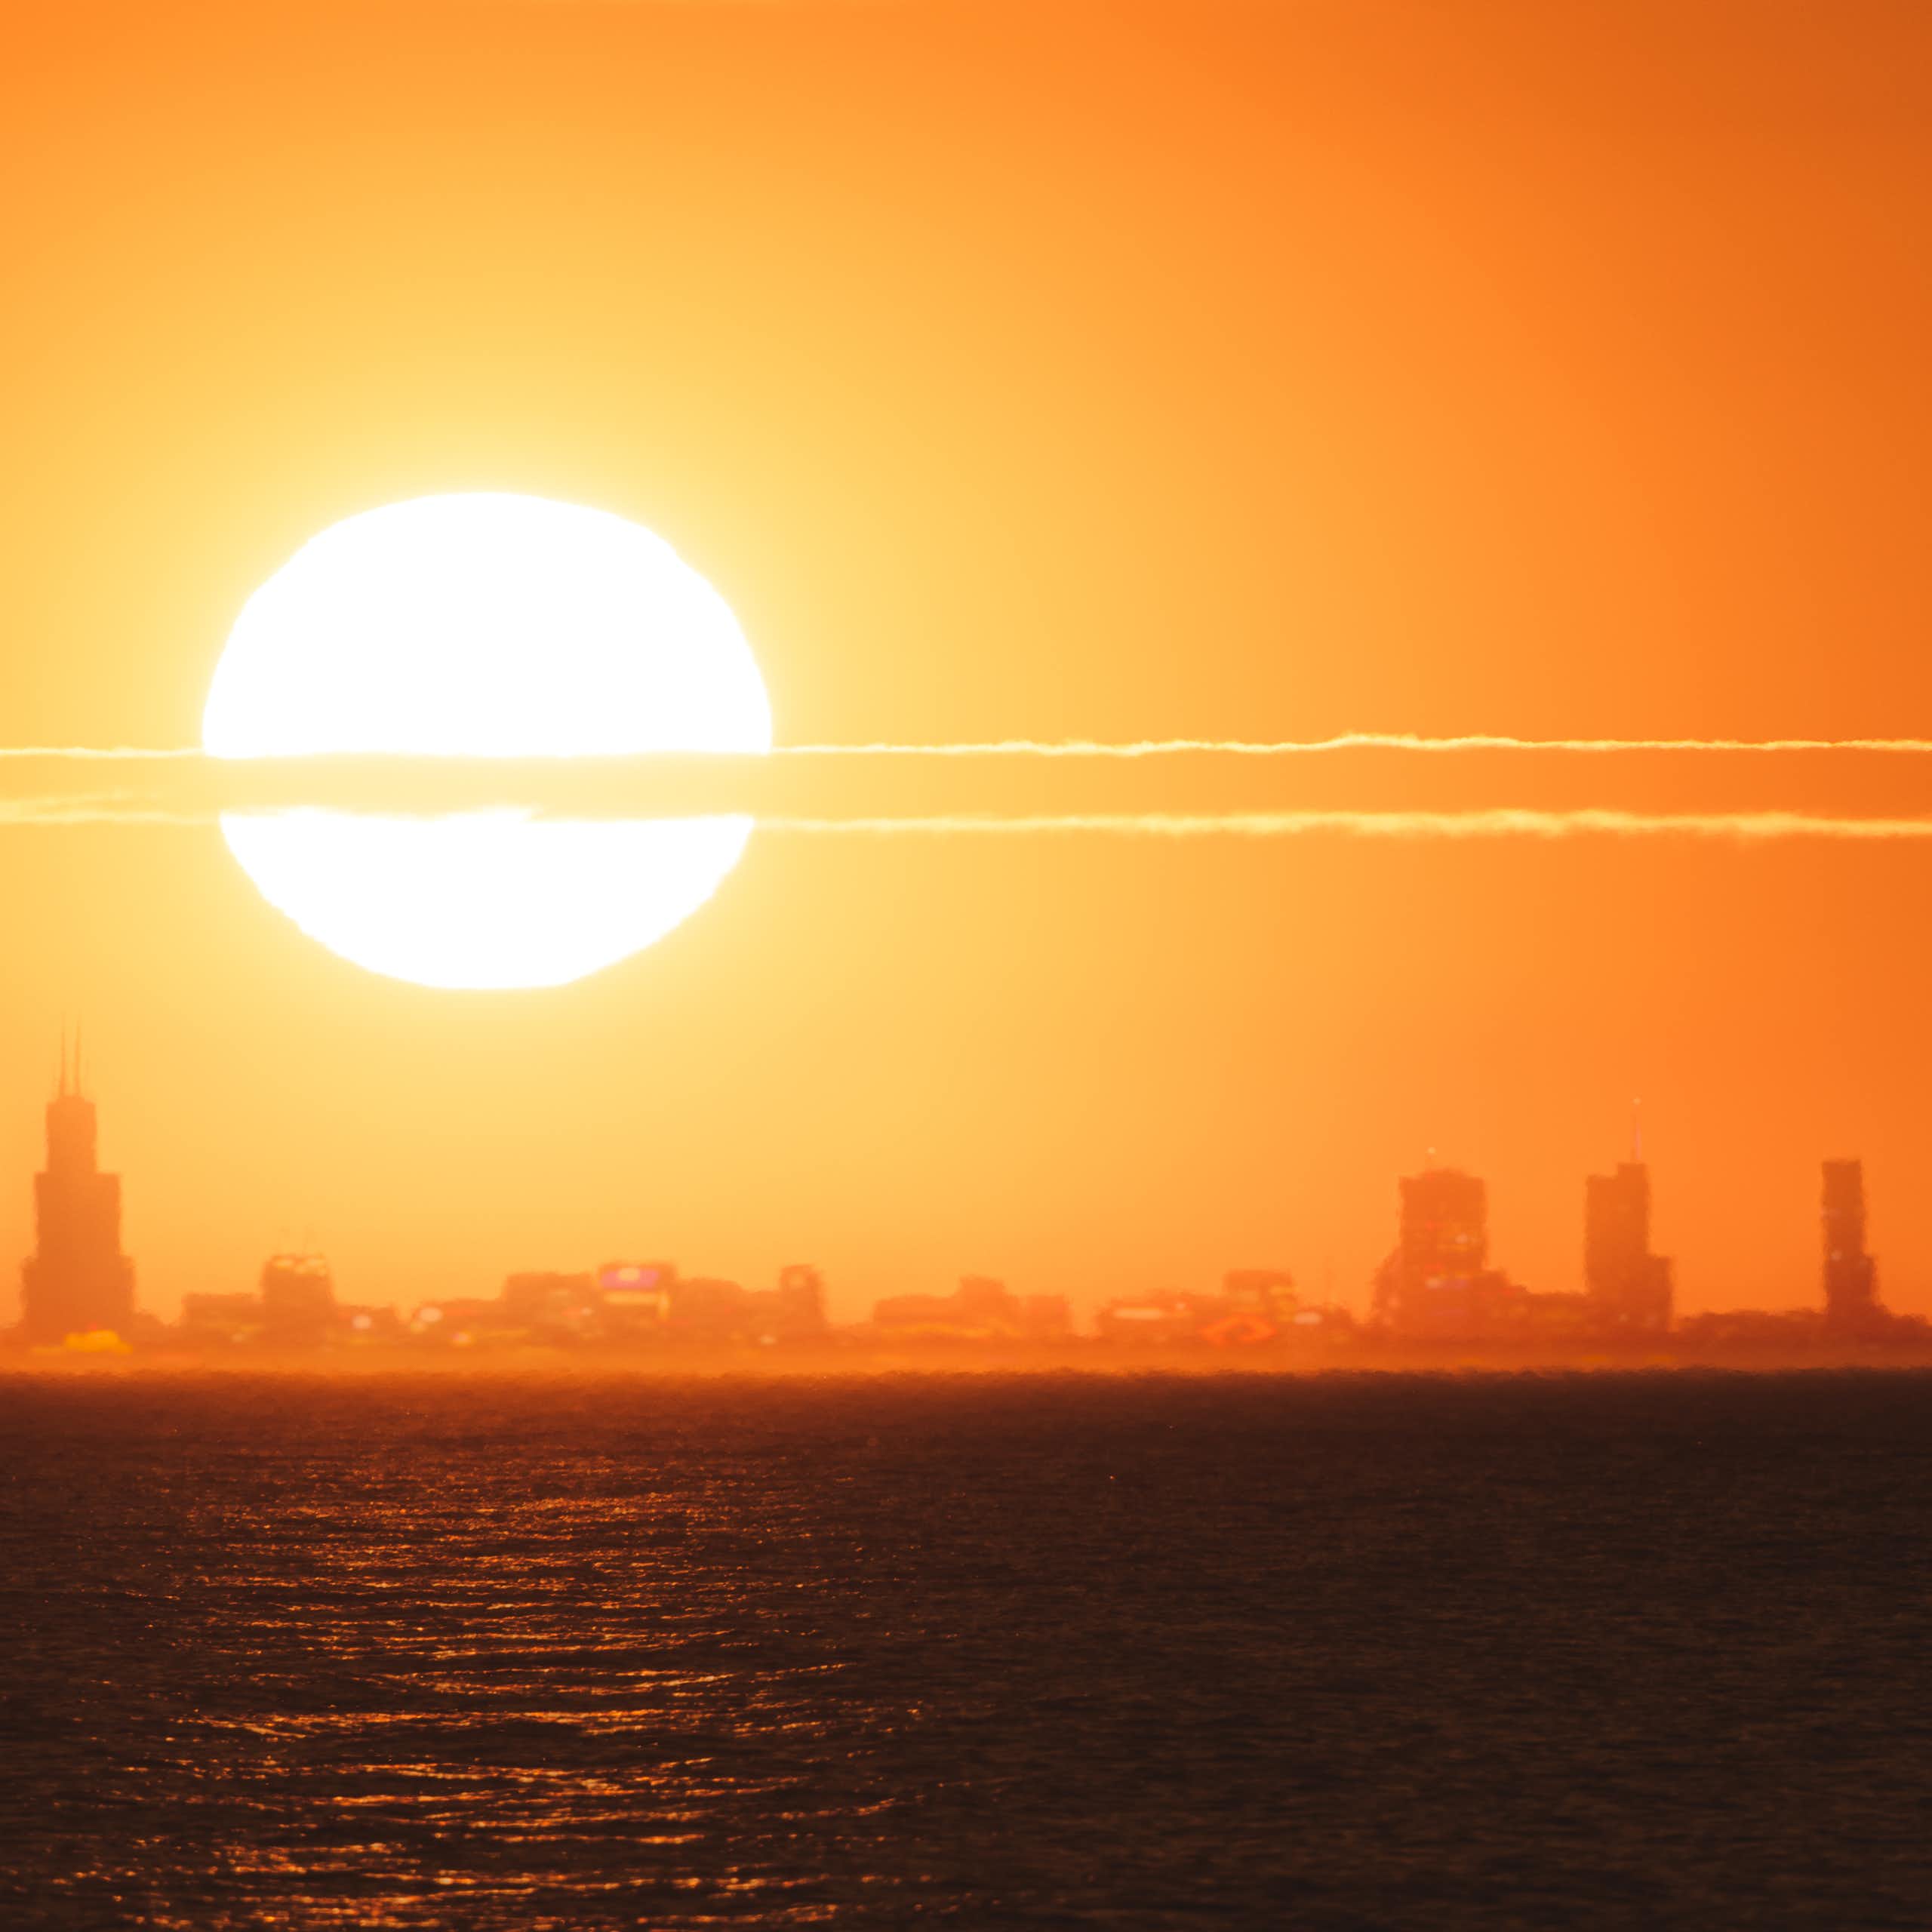 Le soleil se couche sur Chicago par une chaude journée.